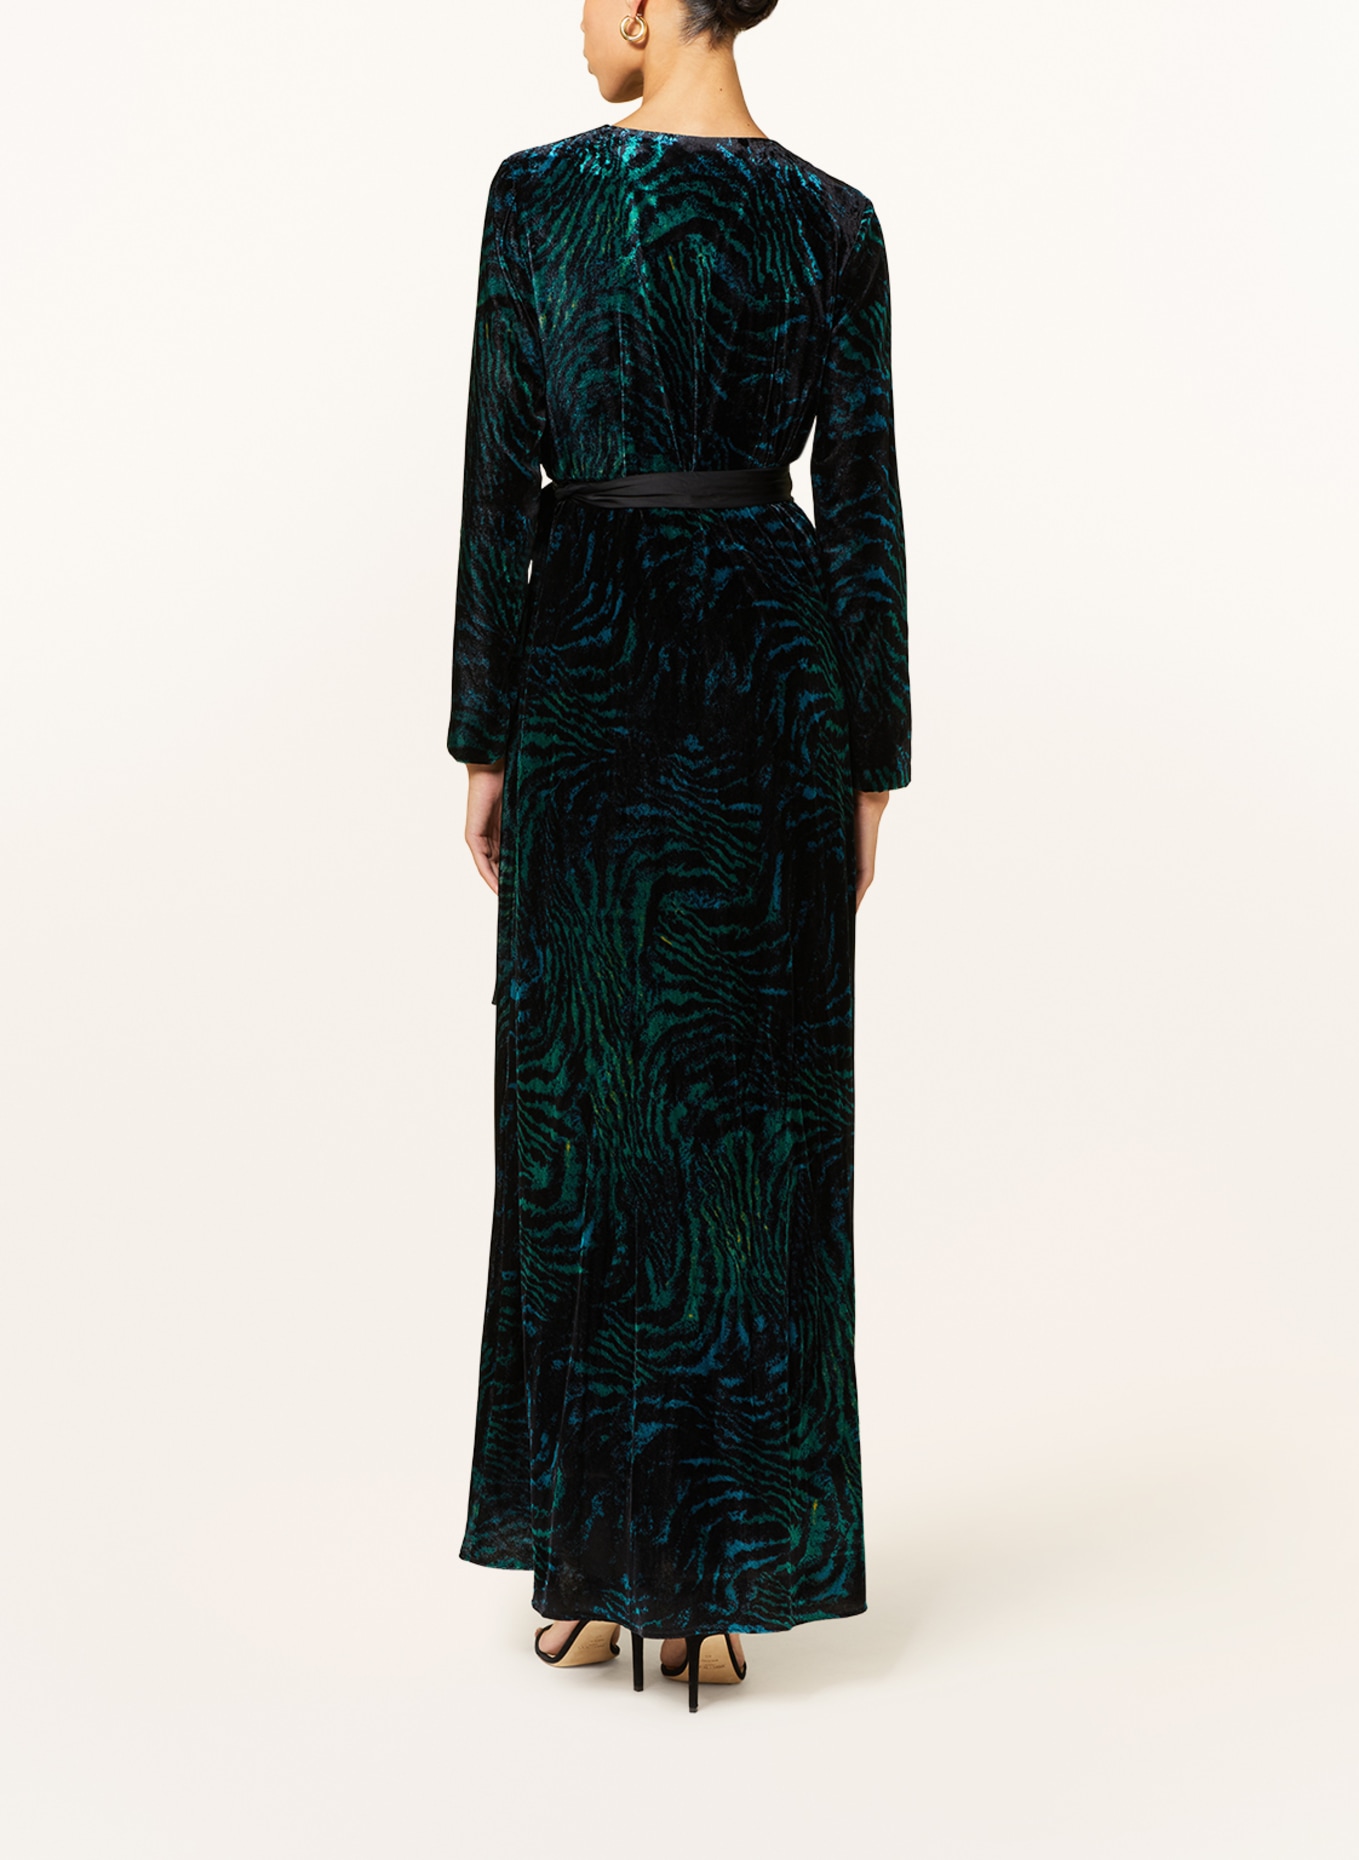 DIANE VON FURSTENBERG Wrap dress JARETH in velvet, Color: TEAL/ BLACK/ BLUE (Image 3)